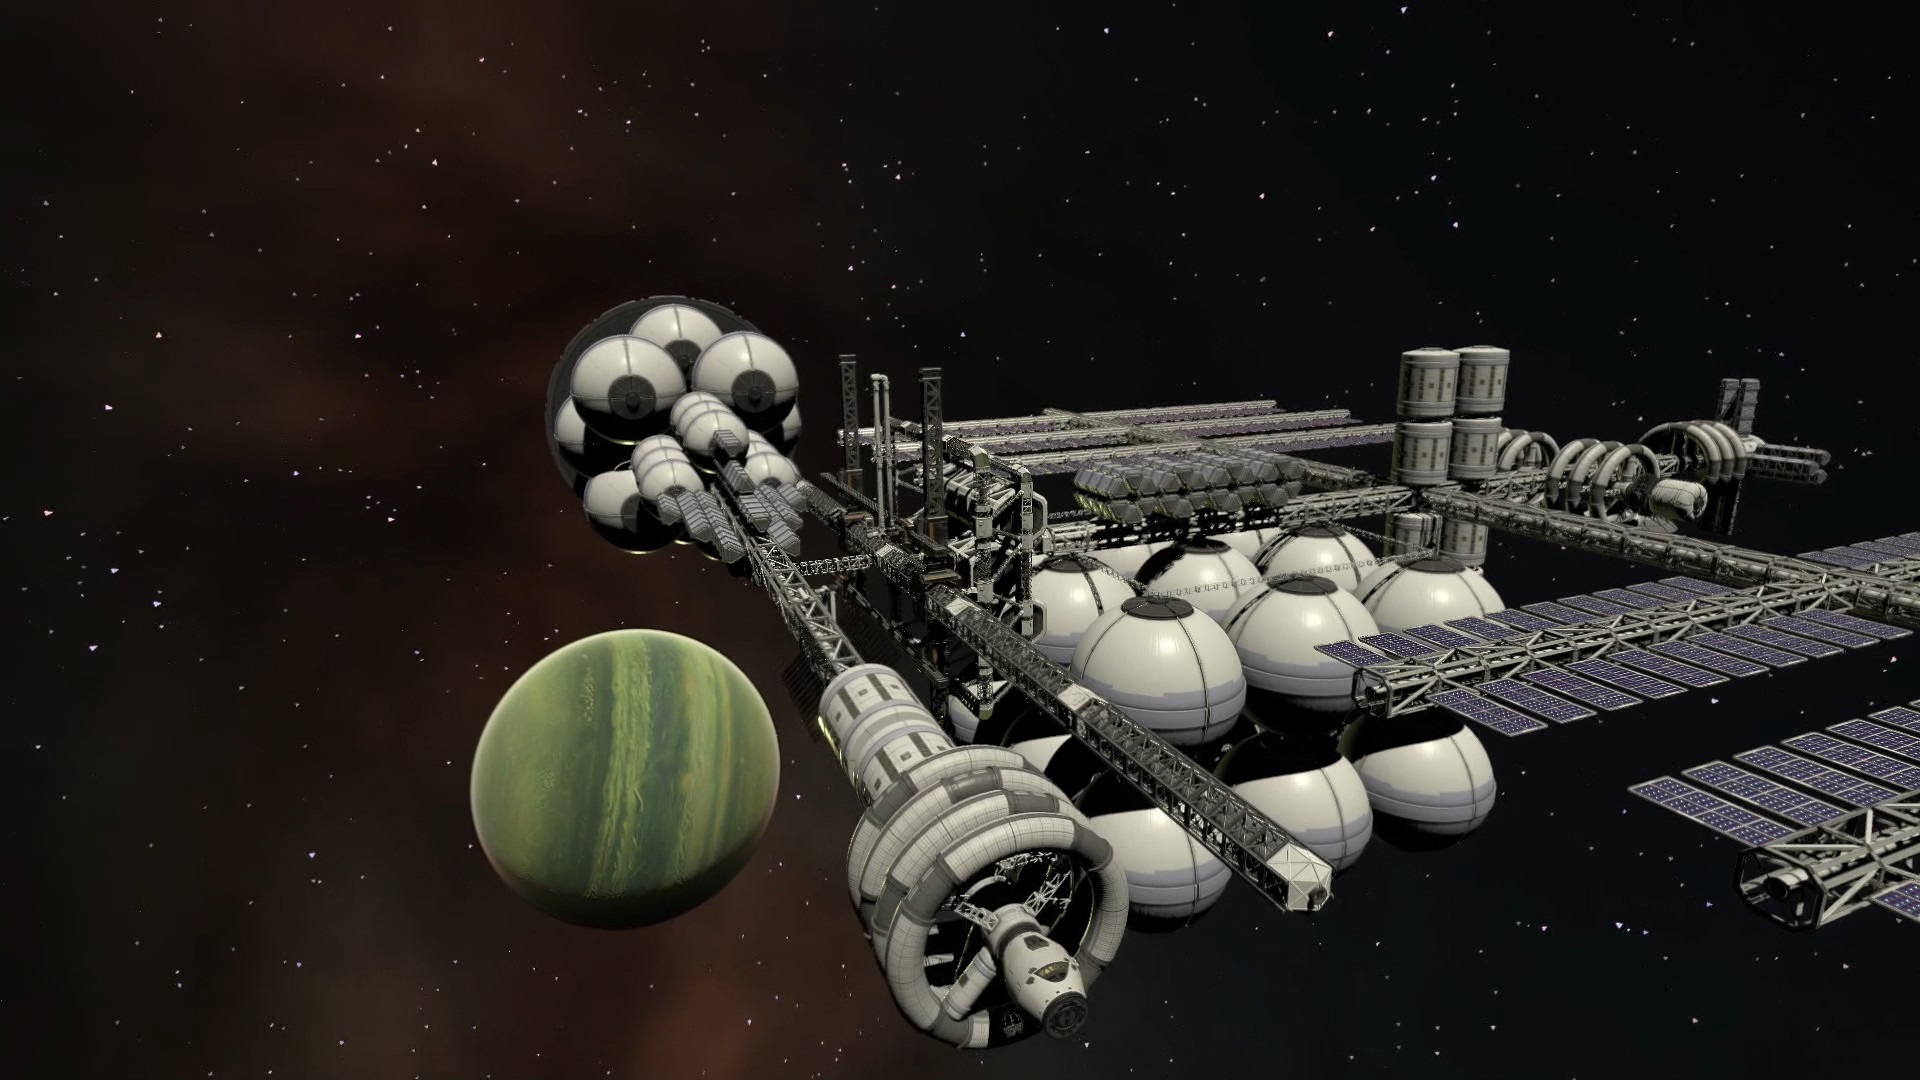 航天模拟游戏《坎巴拉太空计划2》Steam页面上线 明年发售